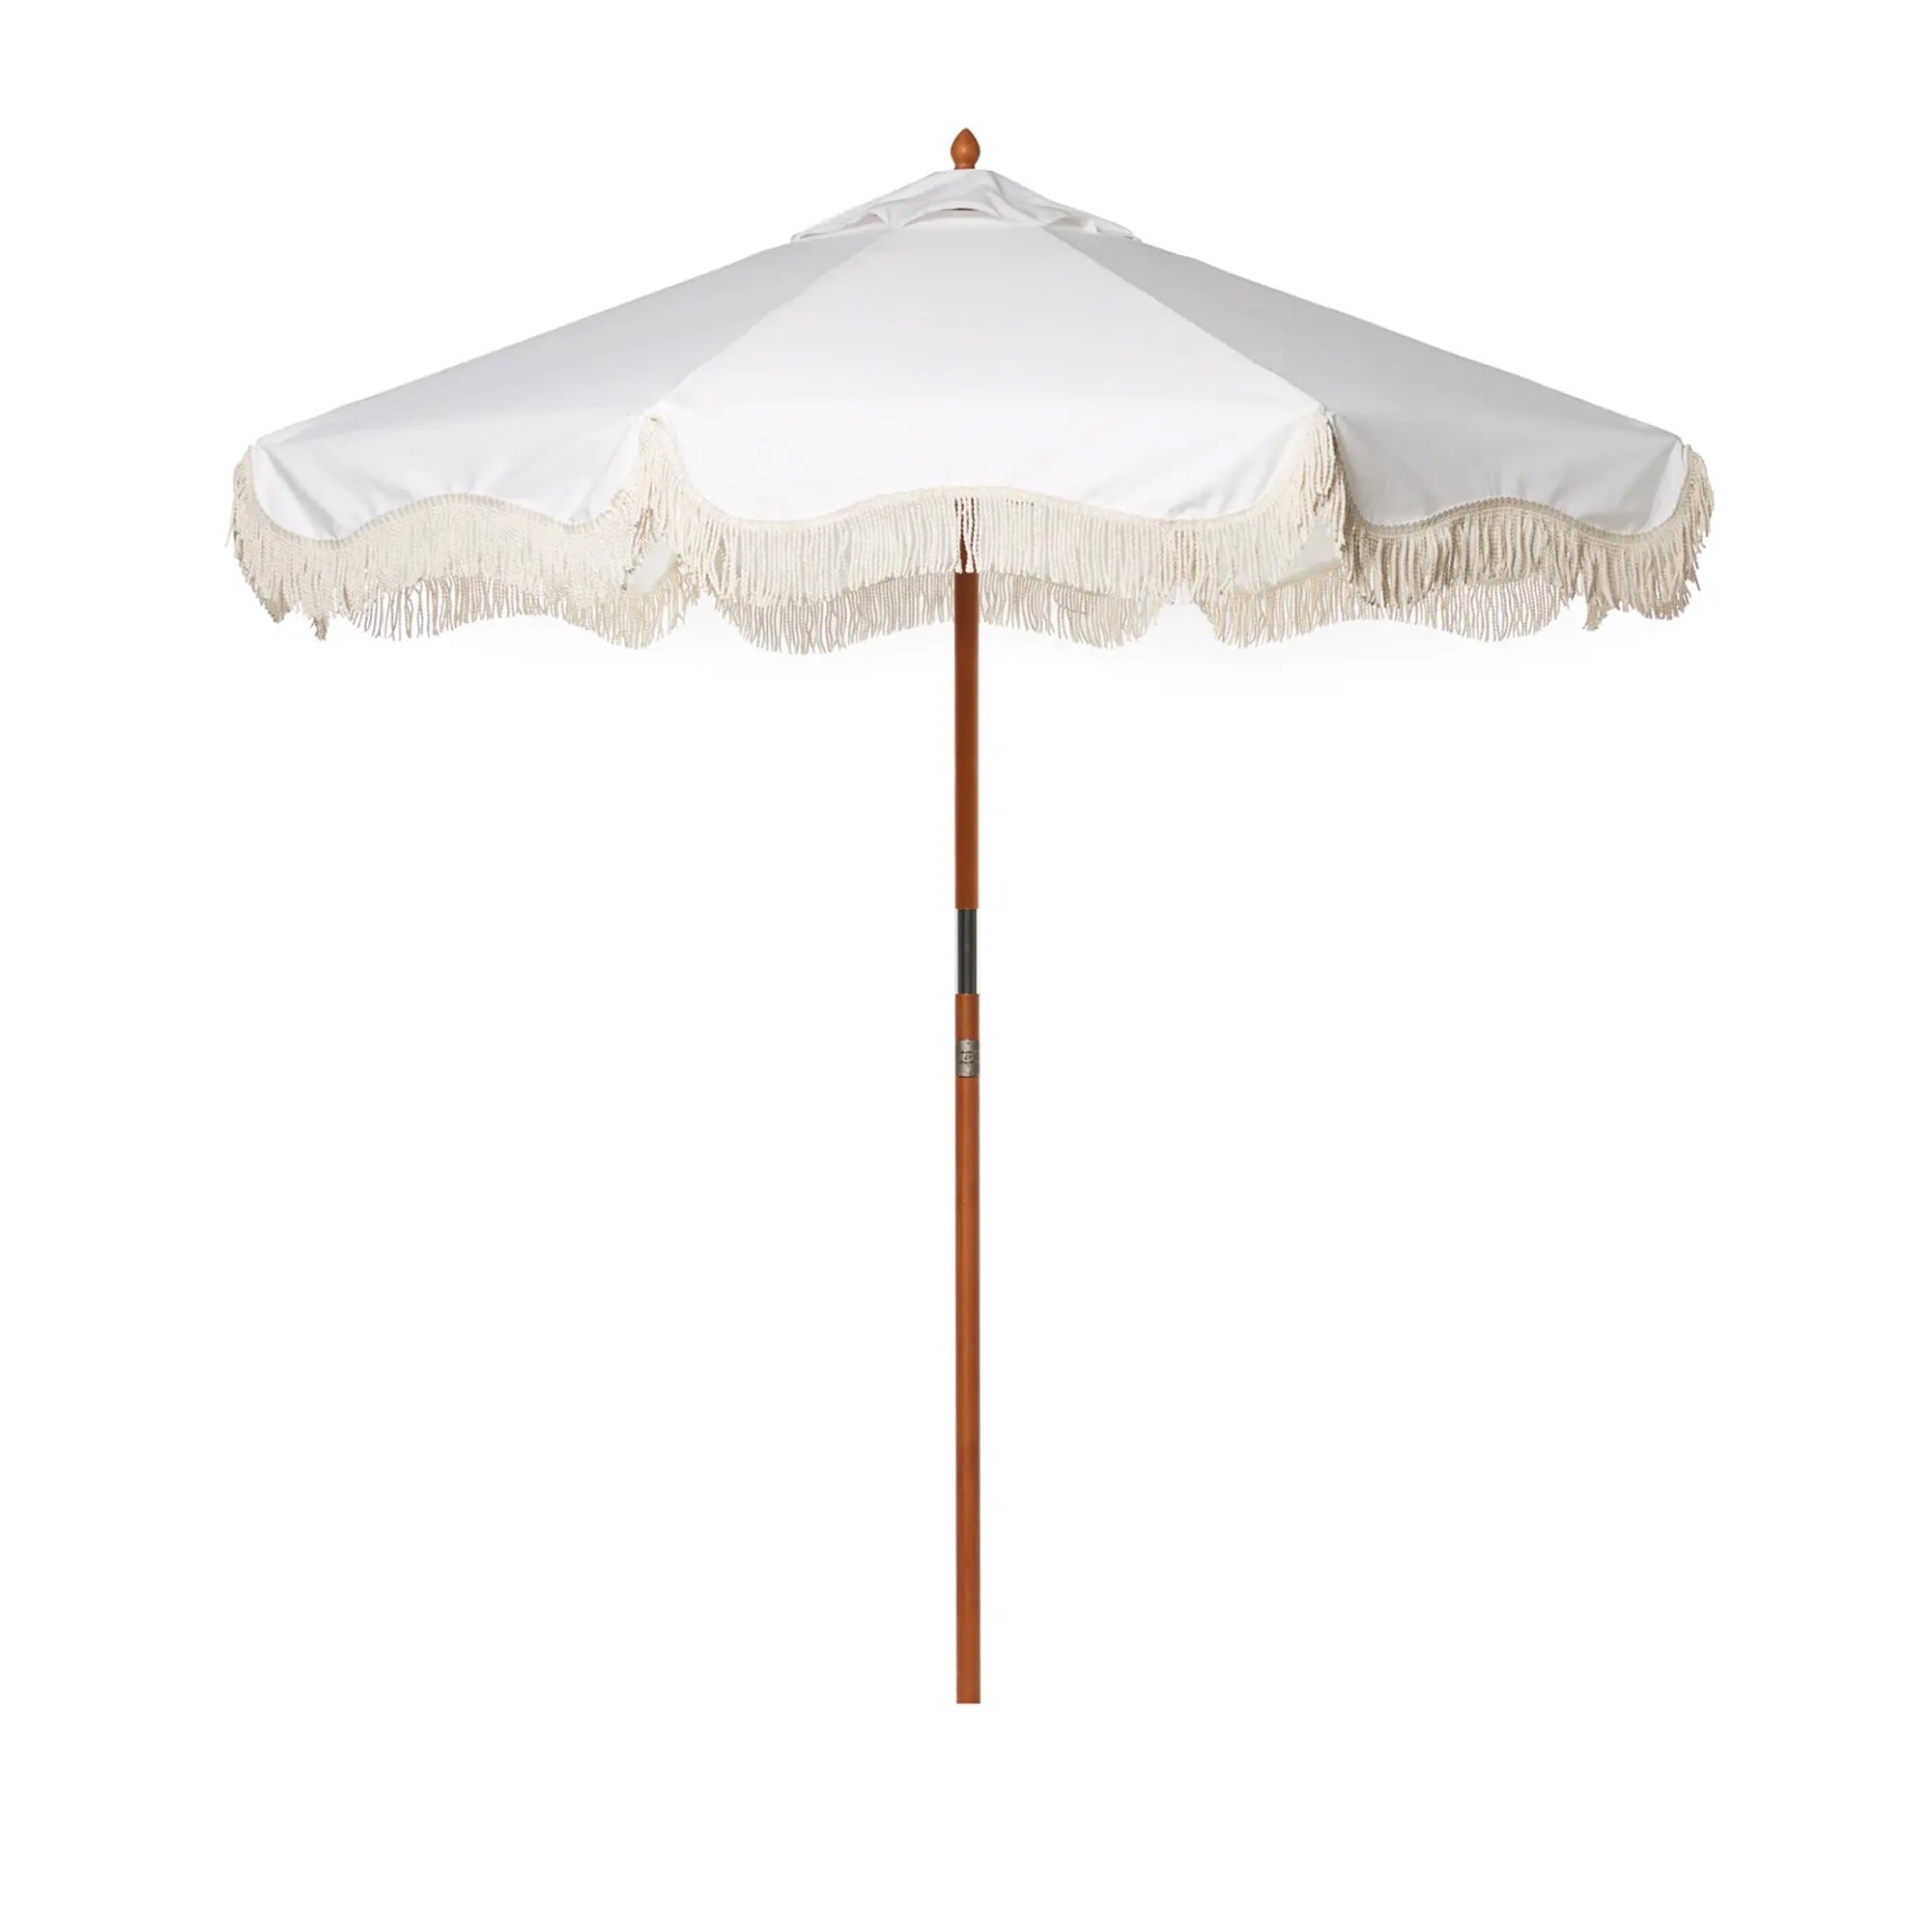 The Market Umbrella - Antique White